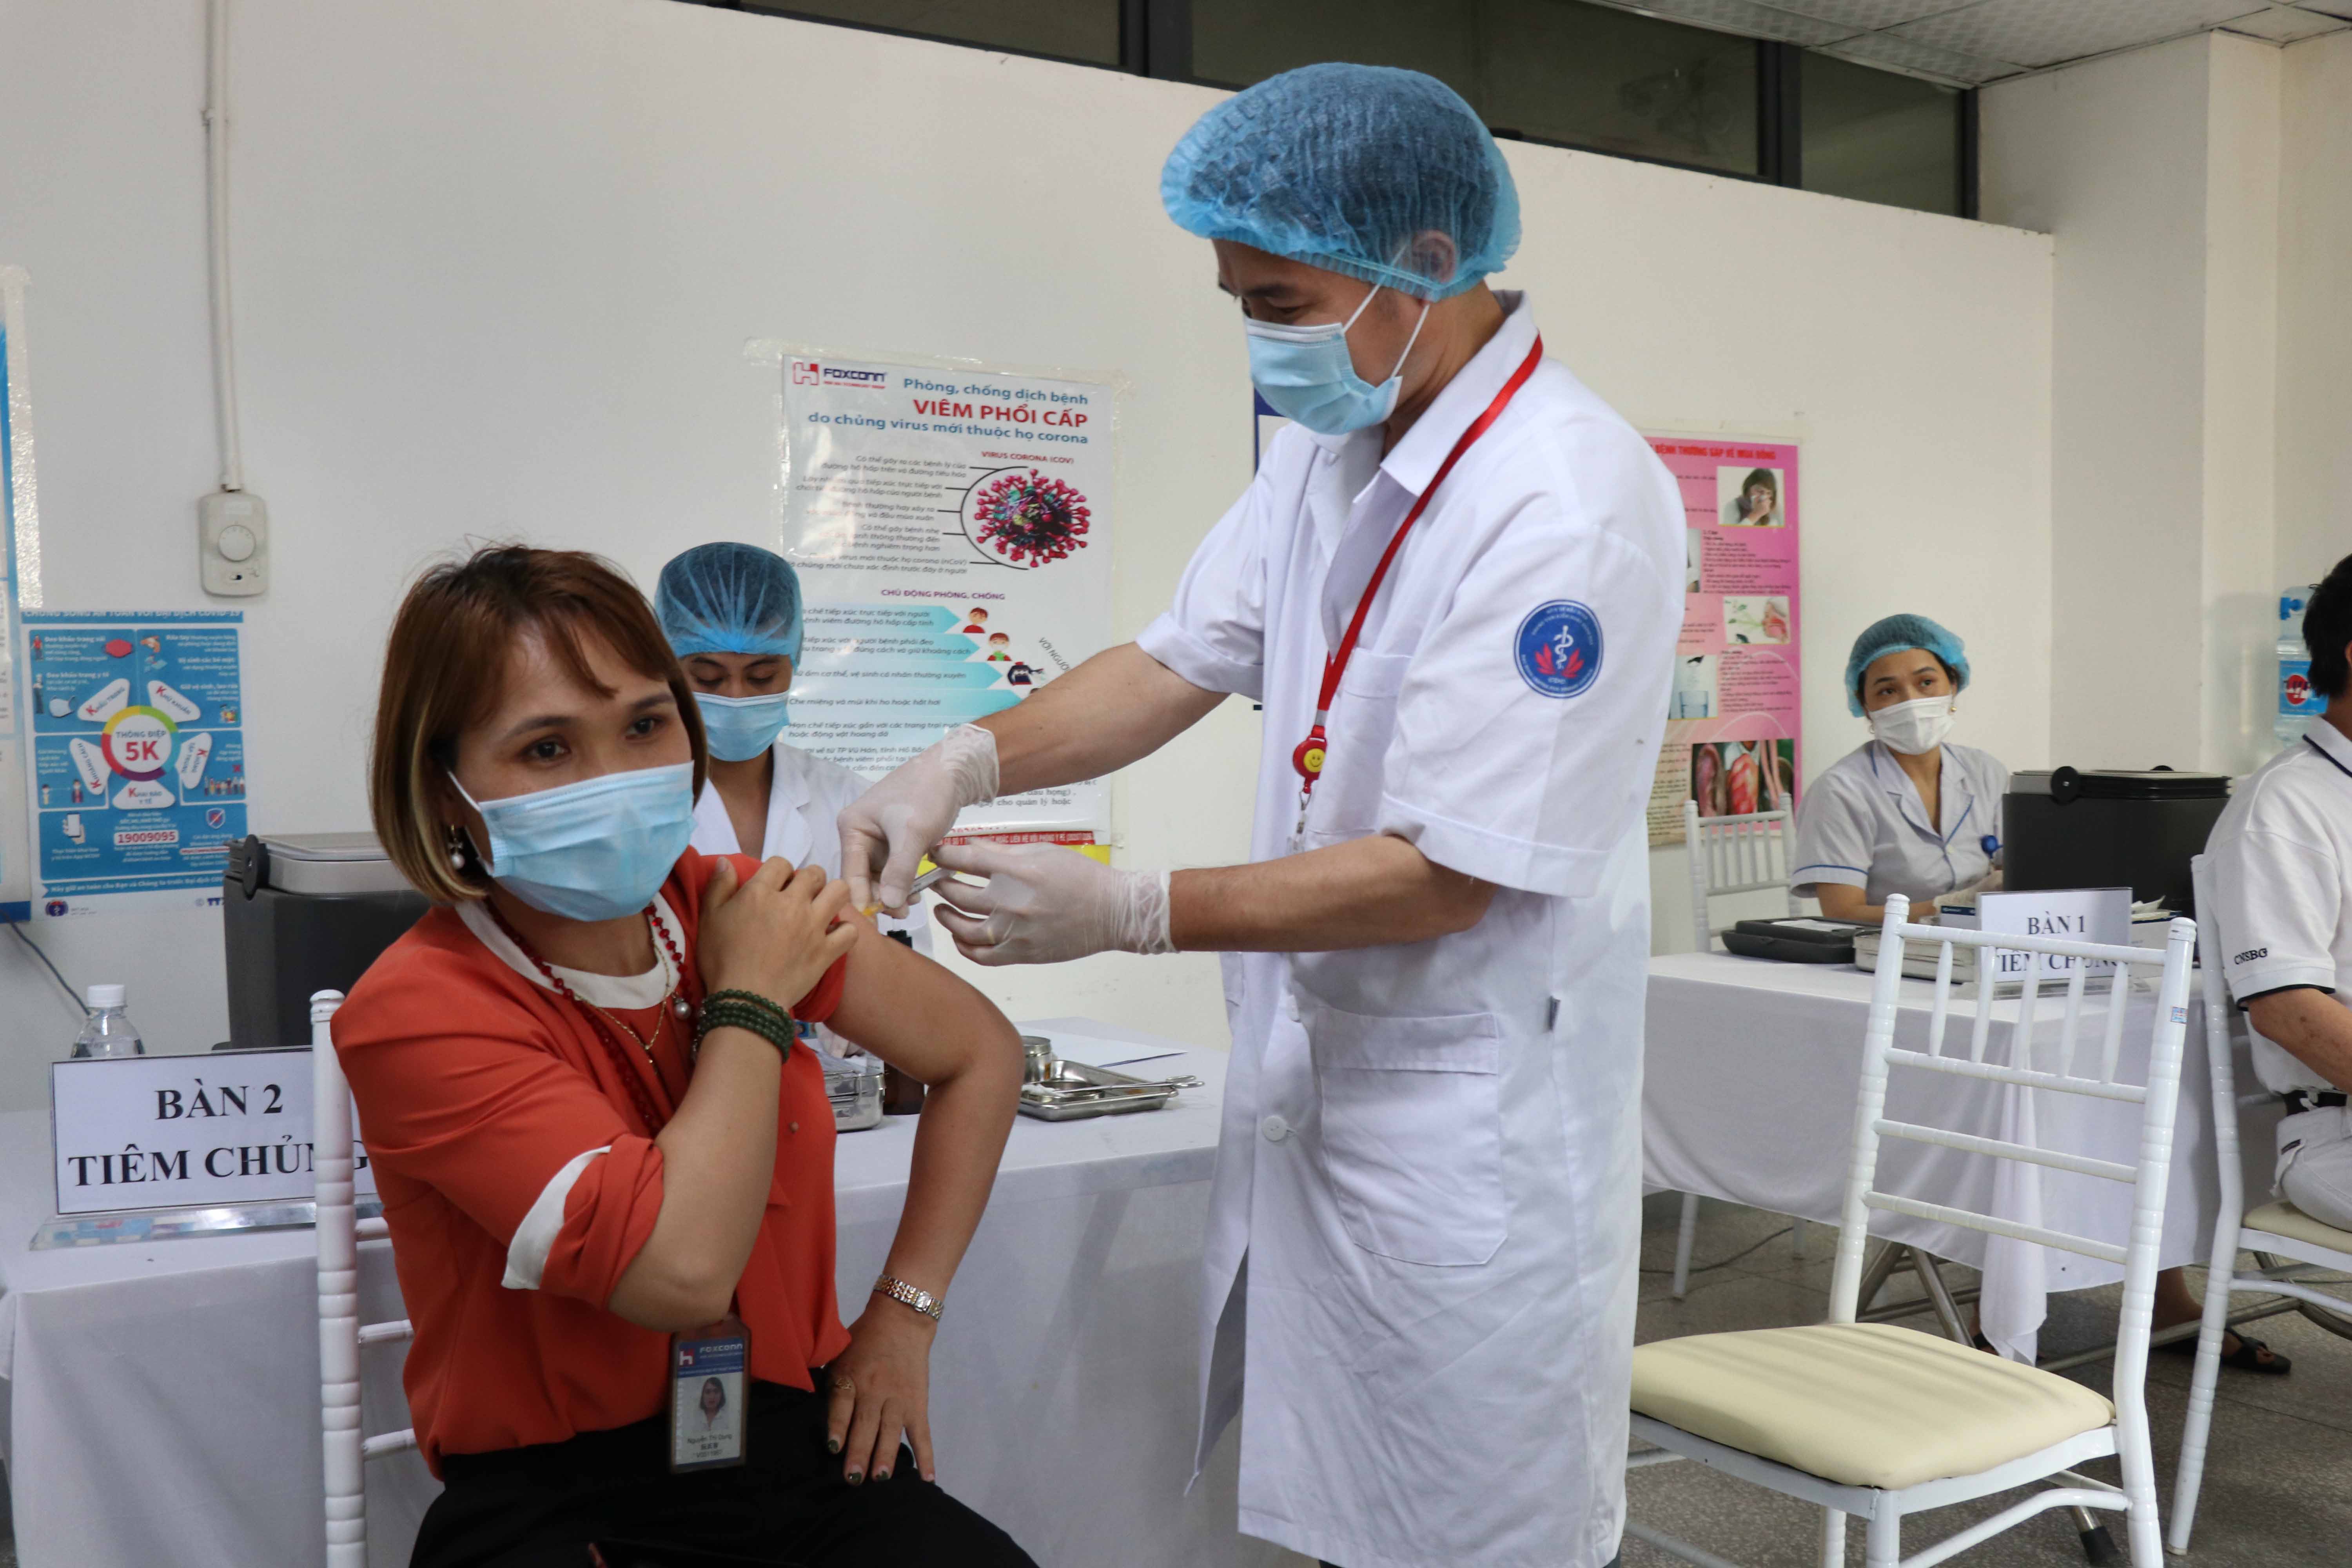 Bắc Ninh: Những công nhân đầu tiên trong khu công nghiệp tiêm vaccine phòng Covid-19 - Ảnh 1.